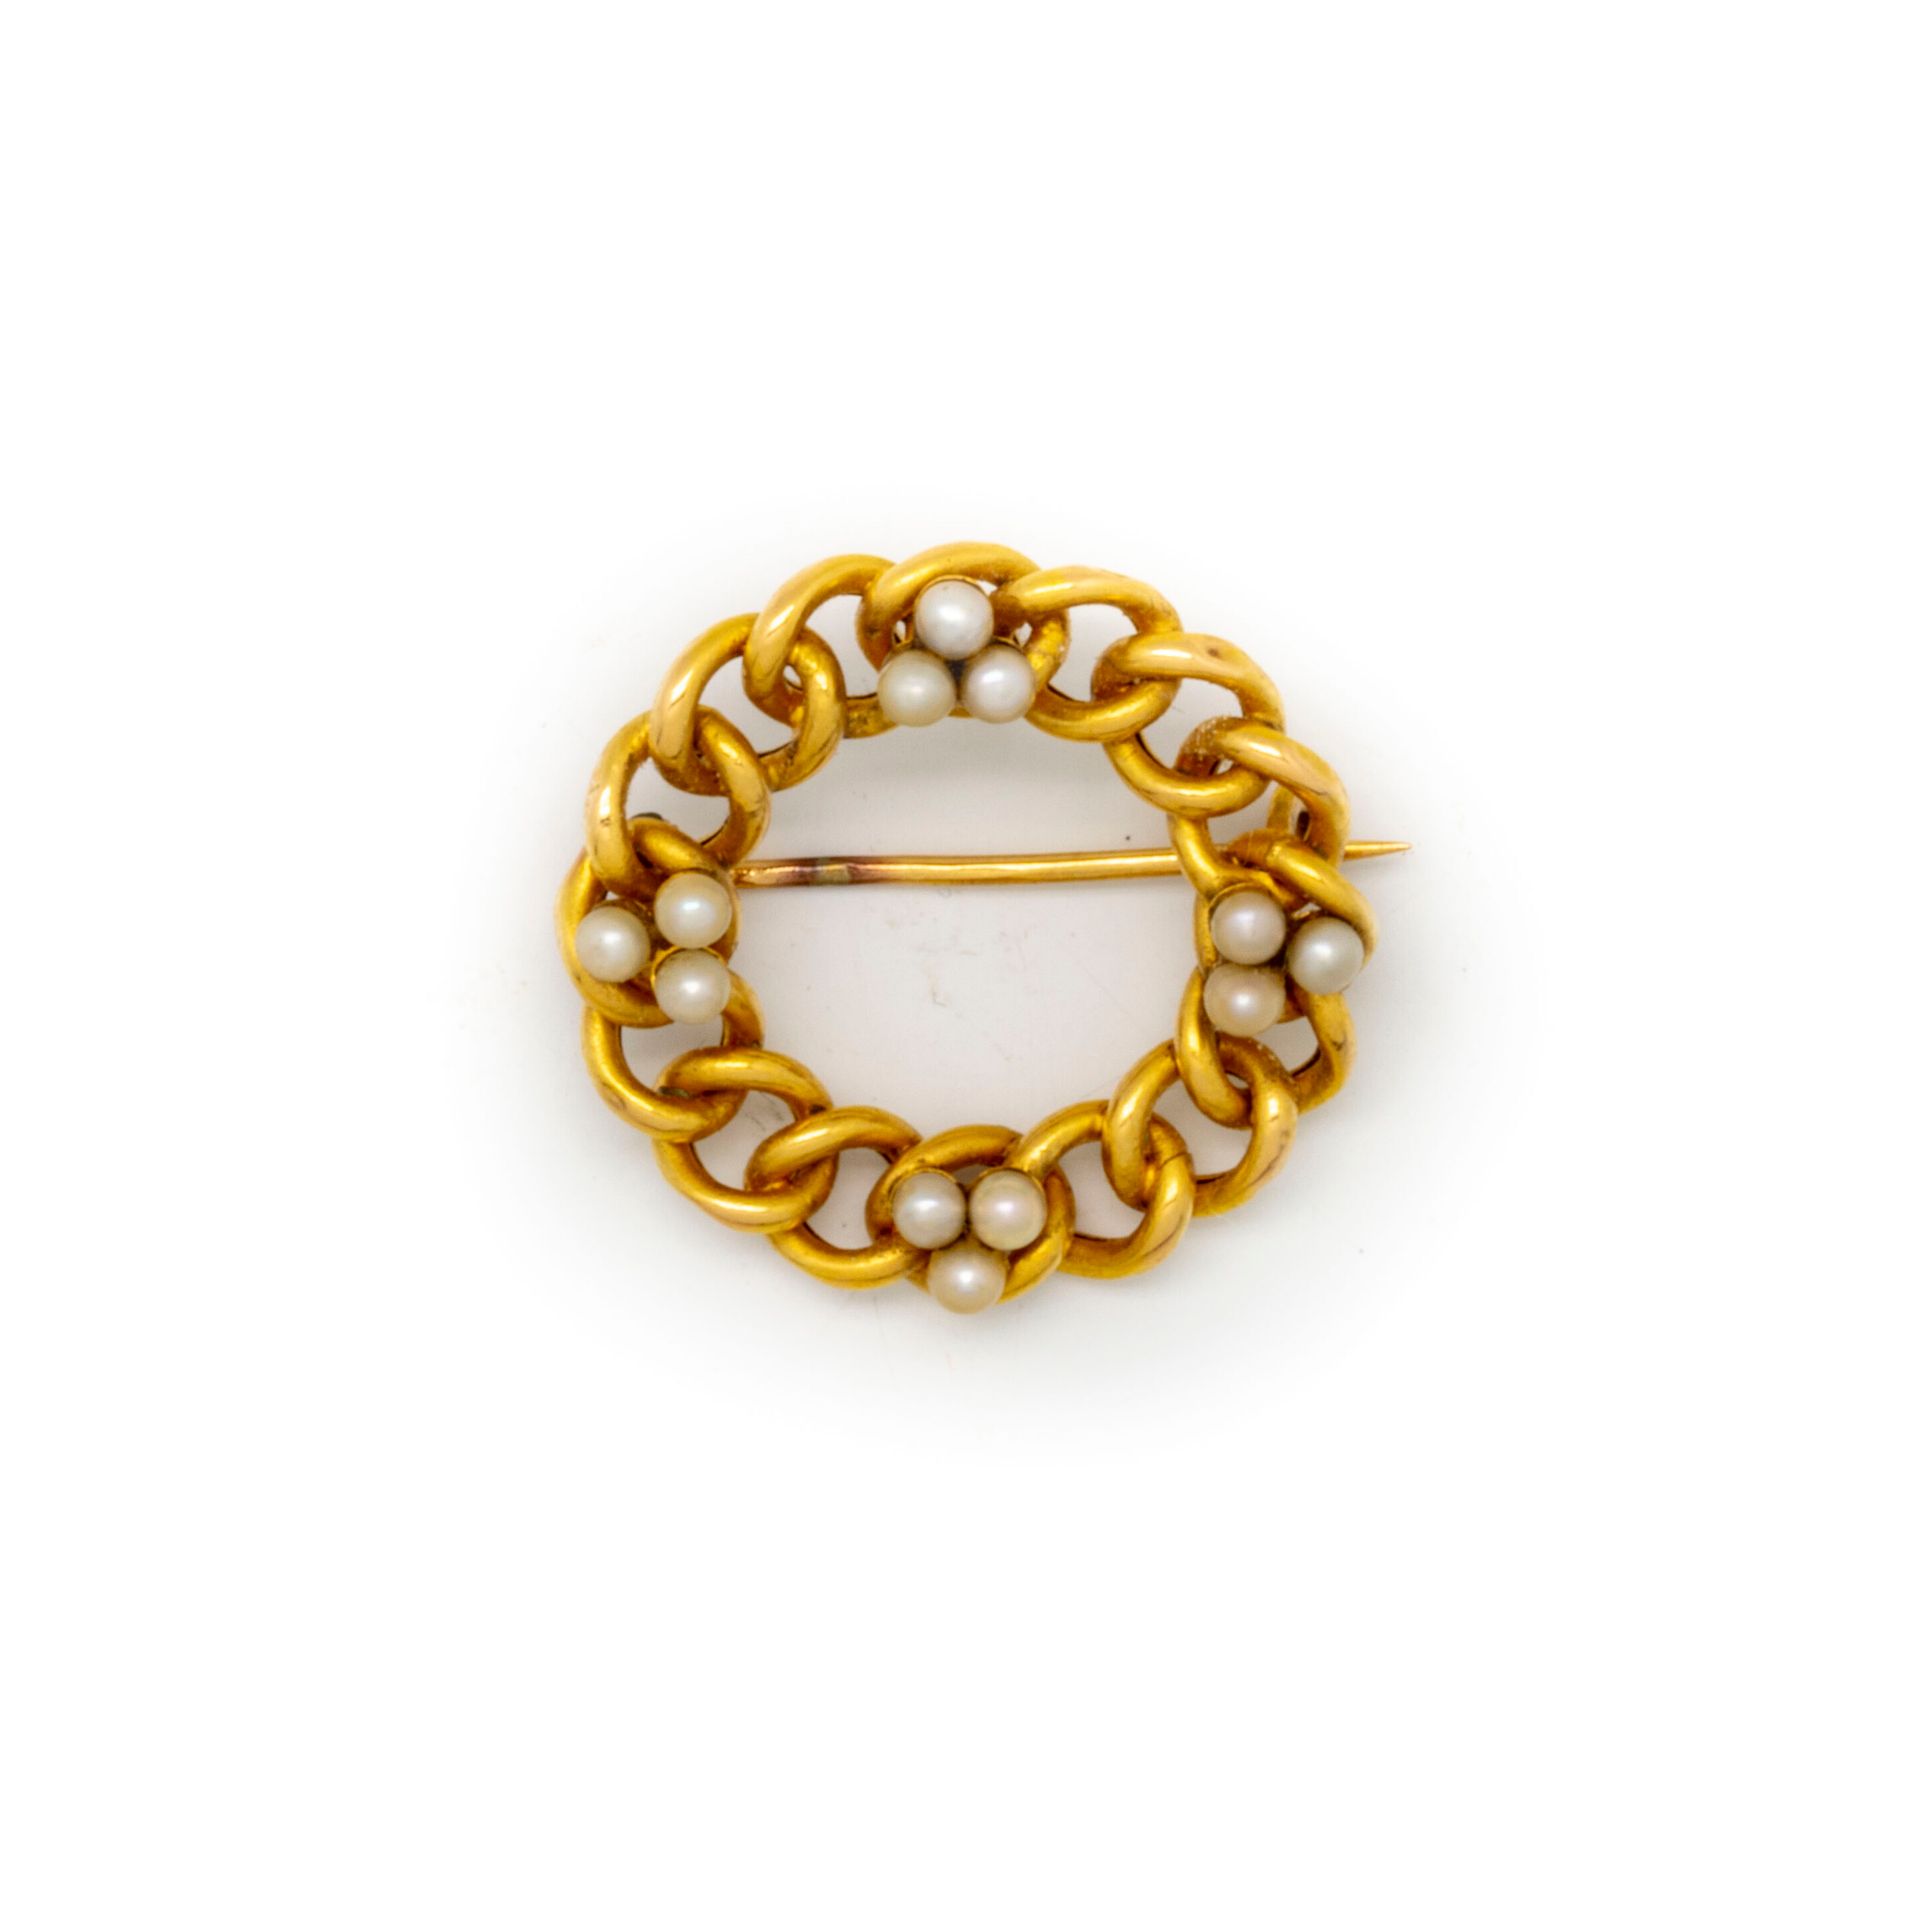 Null Broche ronde en or et perles

Poids brut : 3,7 g.